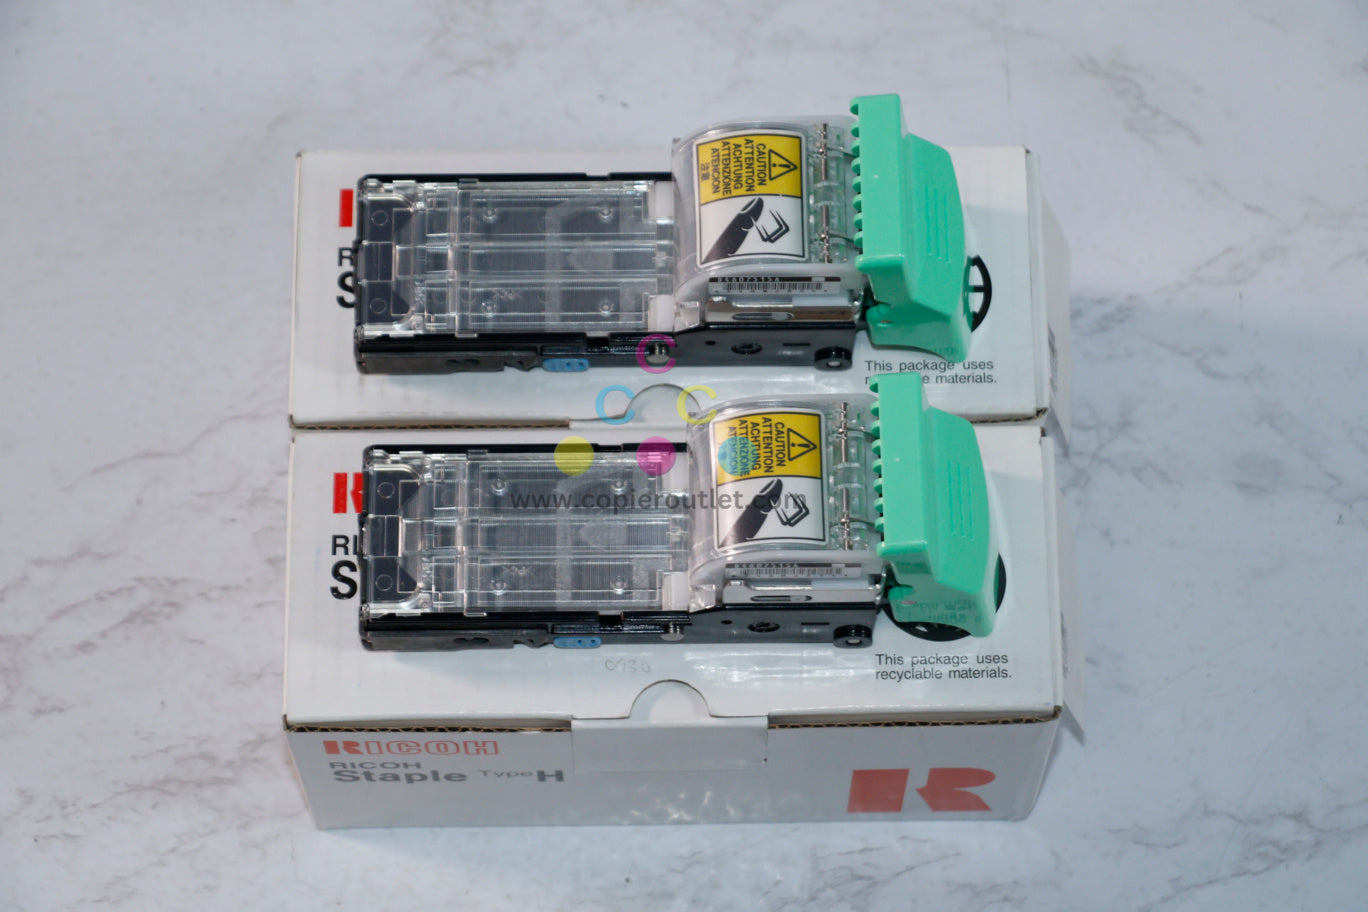 2 New Genuine Ricoh SR810, SR841, SR842 Staple Cartridges Type H / 410508